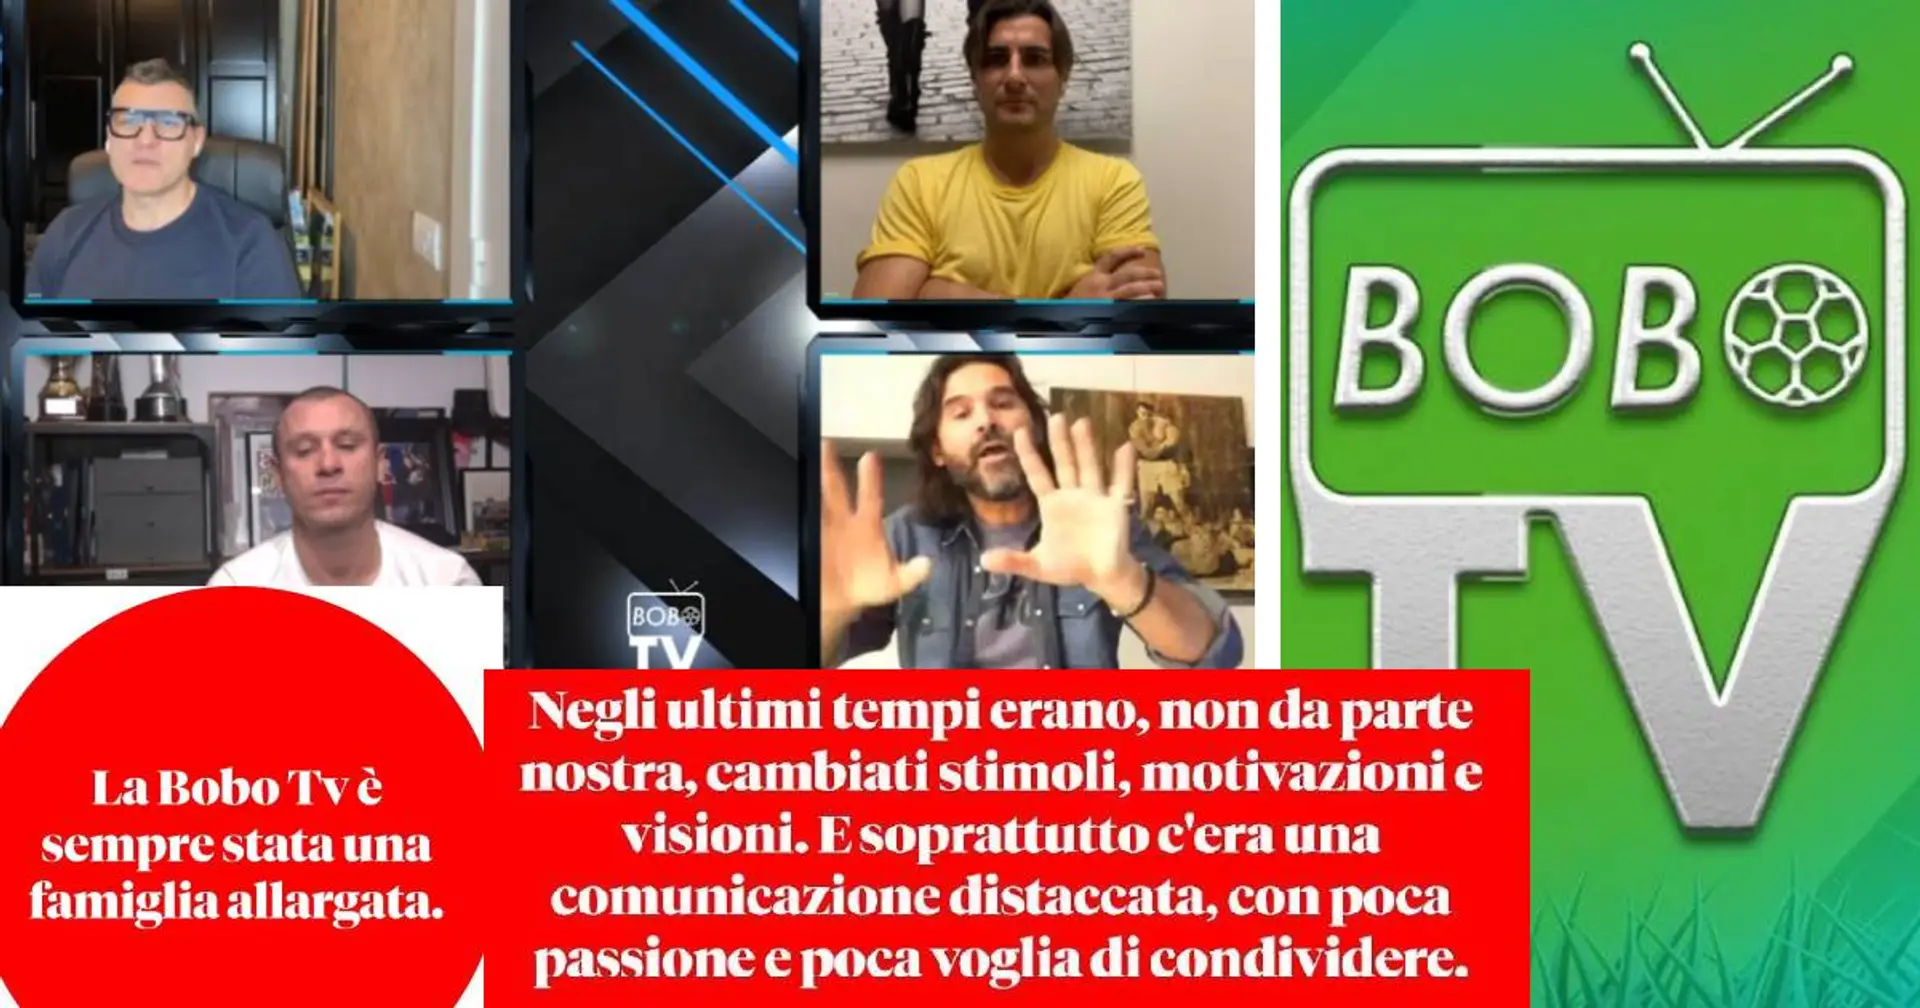 'Sepolto e ucciso lo spirito': durissimo comunicato di Adani, Cassano e Ventola contro la Bobo TV 